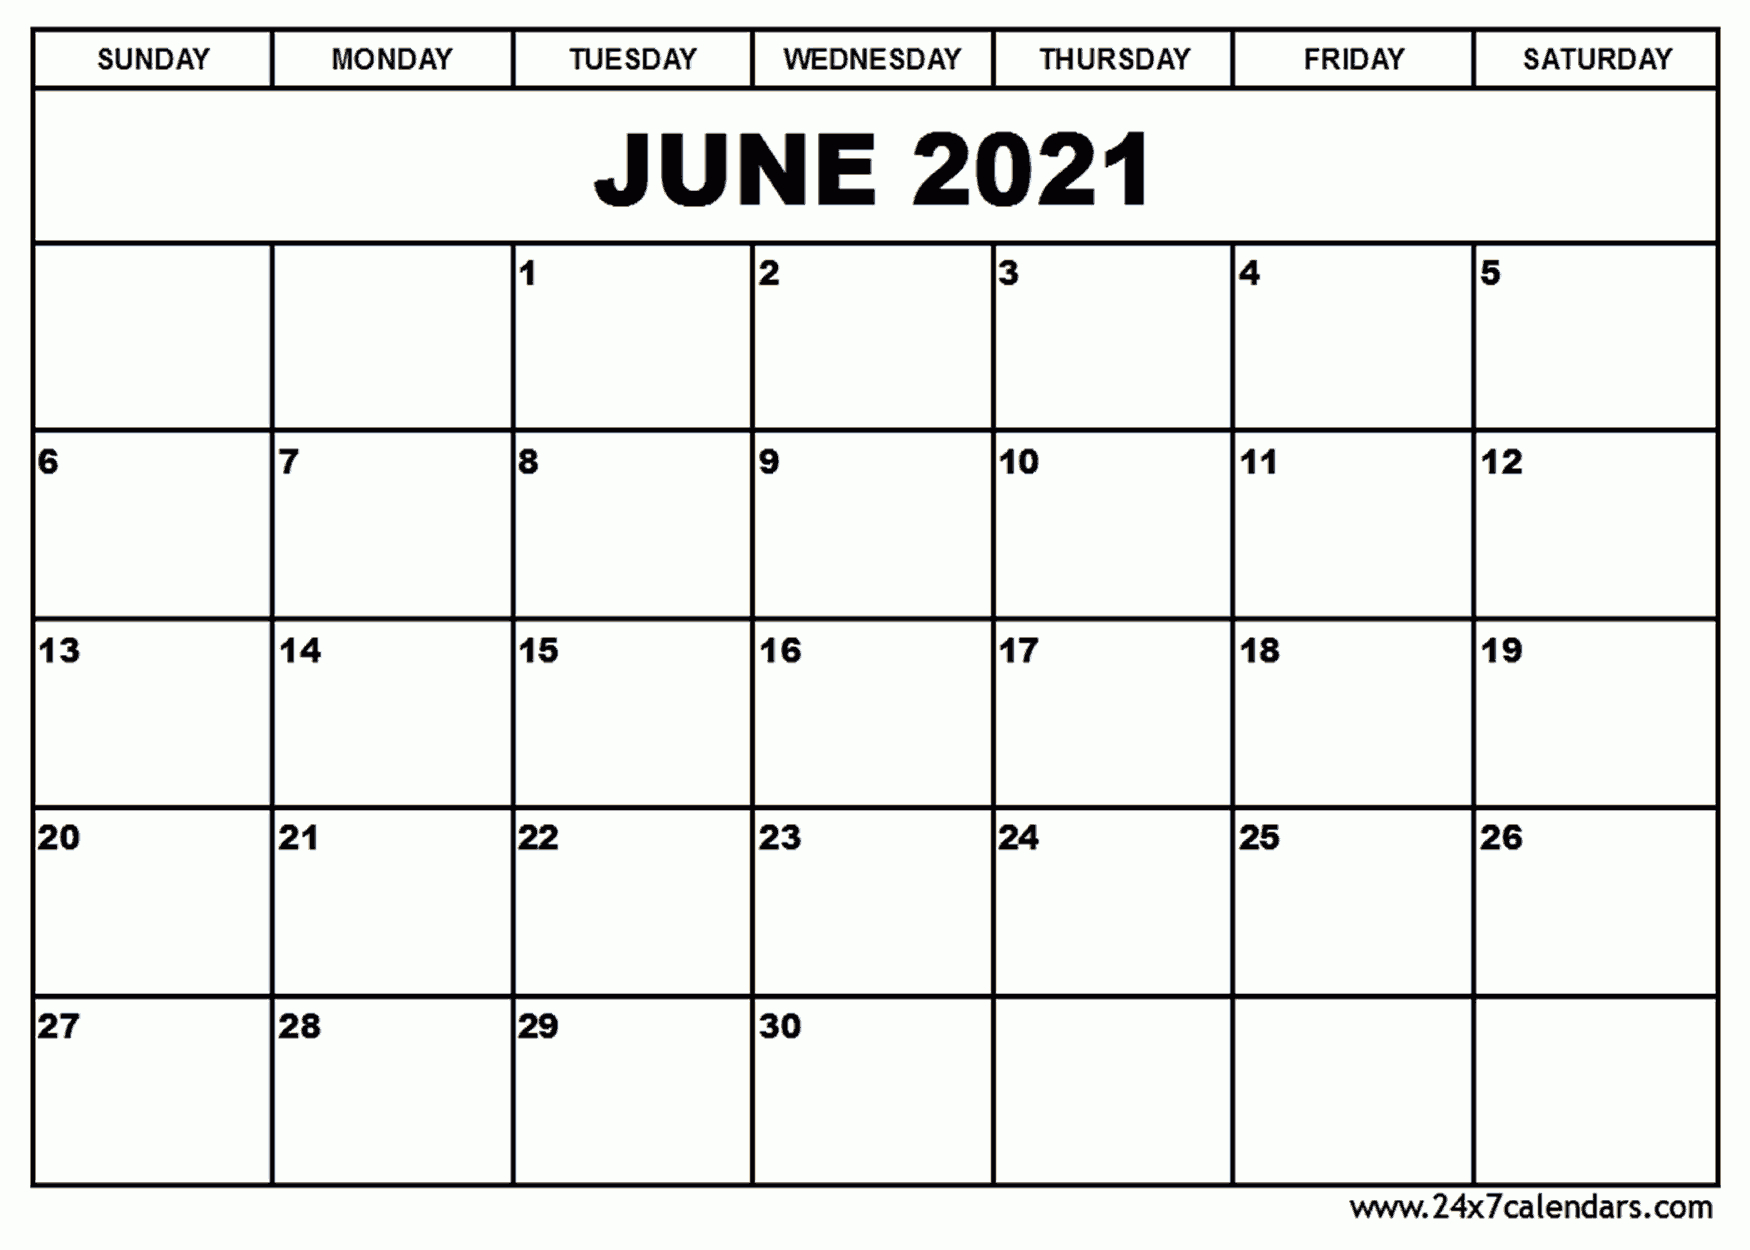 Free Printable June 2021 Calendar : 24X7Calendars-Free 2021 June Calendars That Can Be Edited